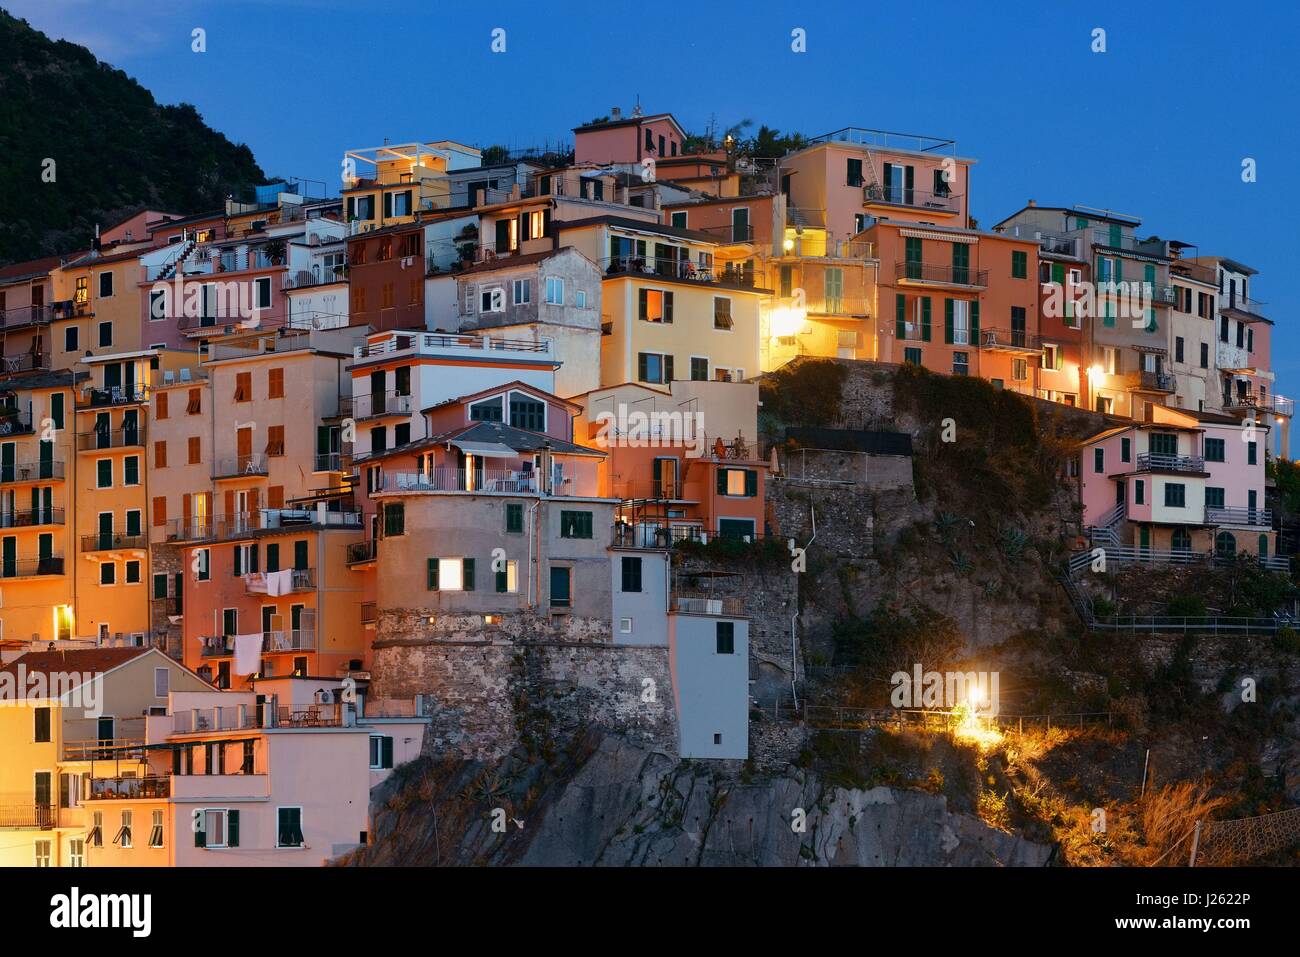 Stile Italiano edifici residente sulla scogliera a Manarola nelle Cinque Terre di notte, Italia. Foto Stock